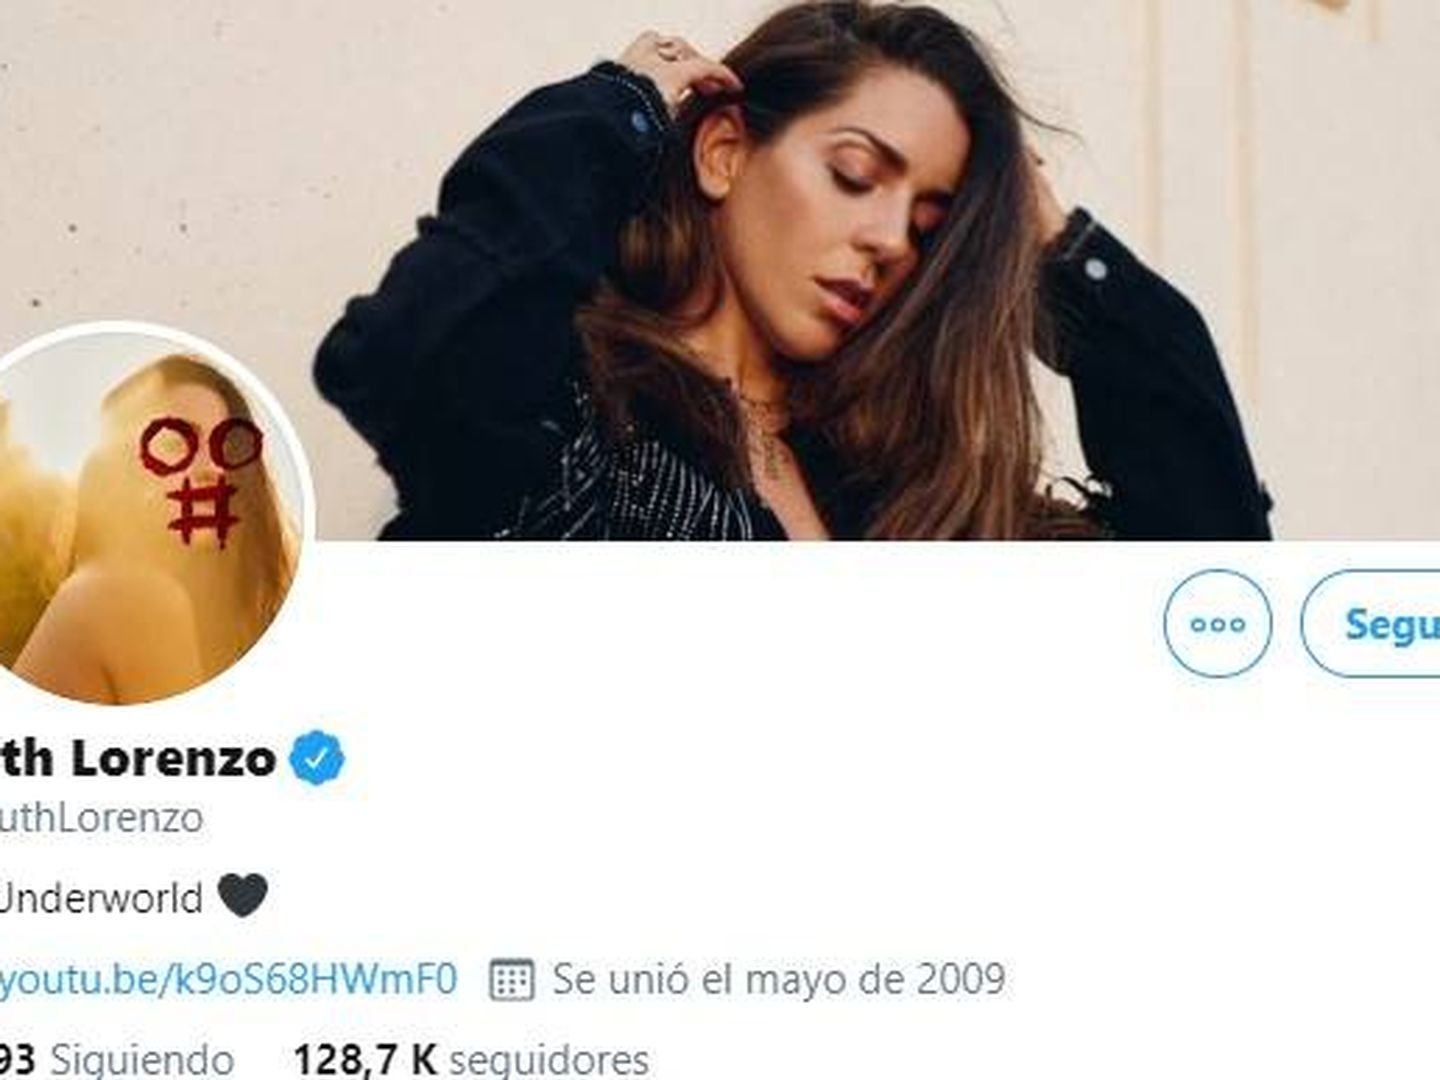 Perfil de Twitter de la cantante Ruth Lorenzo con una foto similar a la de 'El Gran Secuestro'.